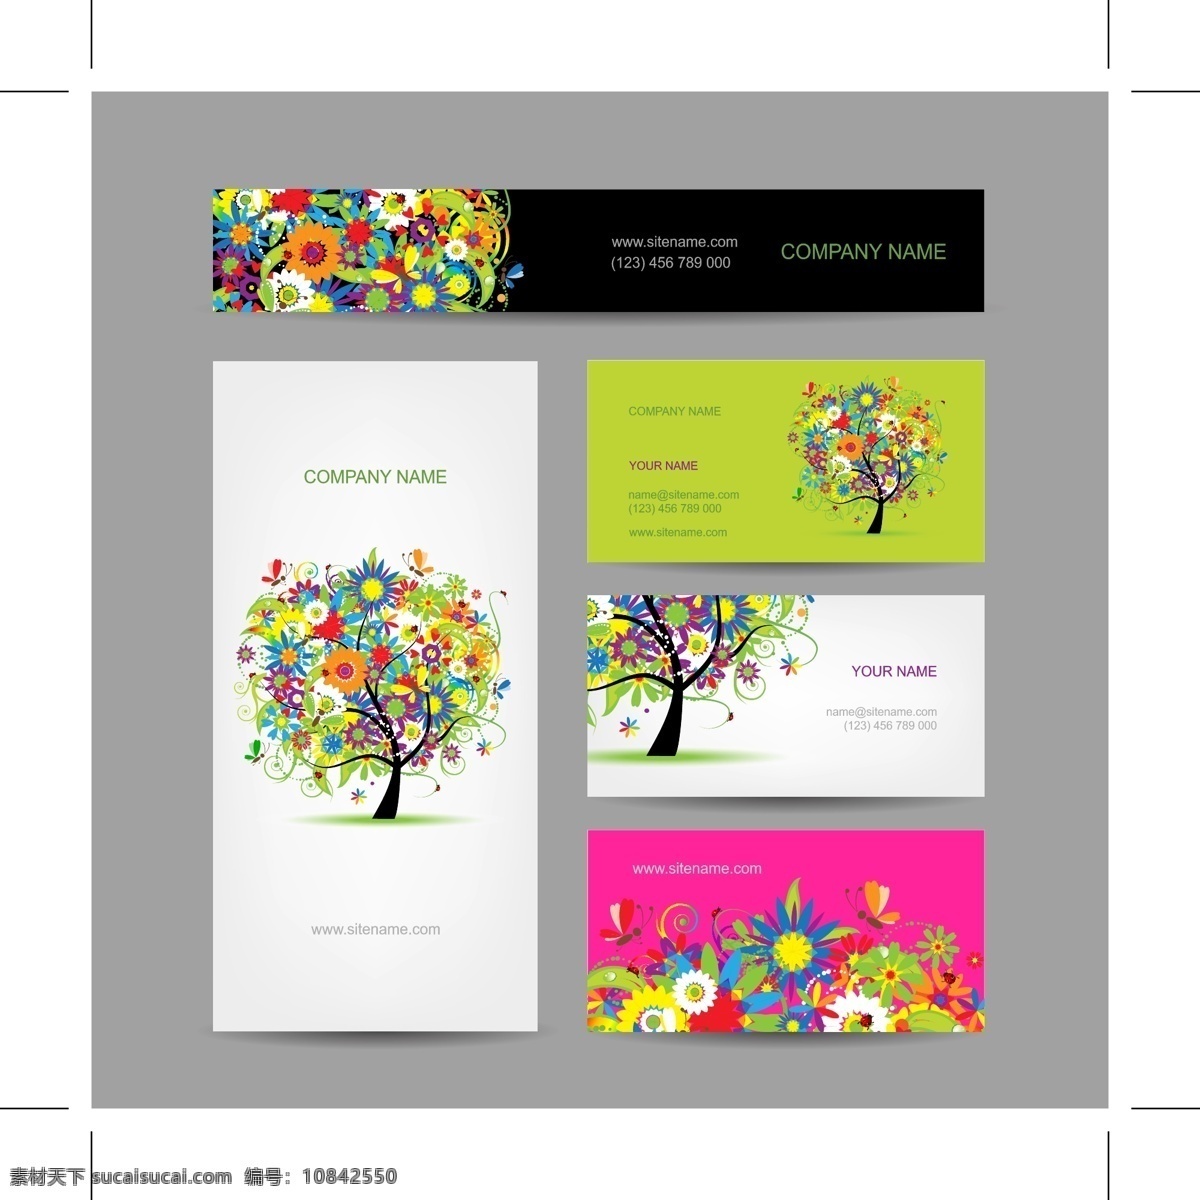 环保 题材 vi 模板 公司vi模板 名片 信笺纸 时尚 绿色环保 花卉树木 创意树形 vis 识别 系统 矢量图